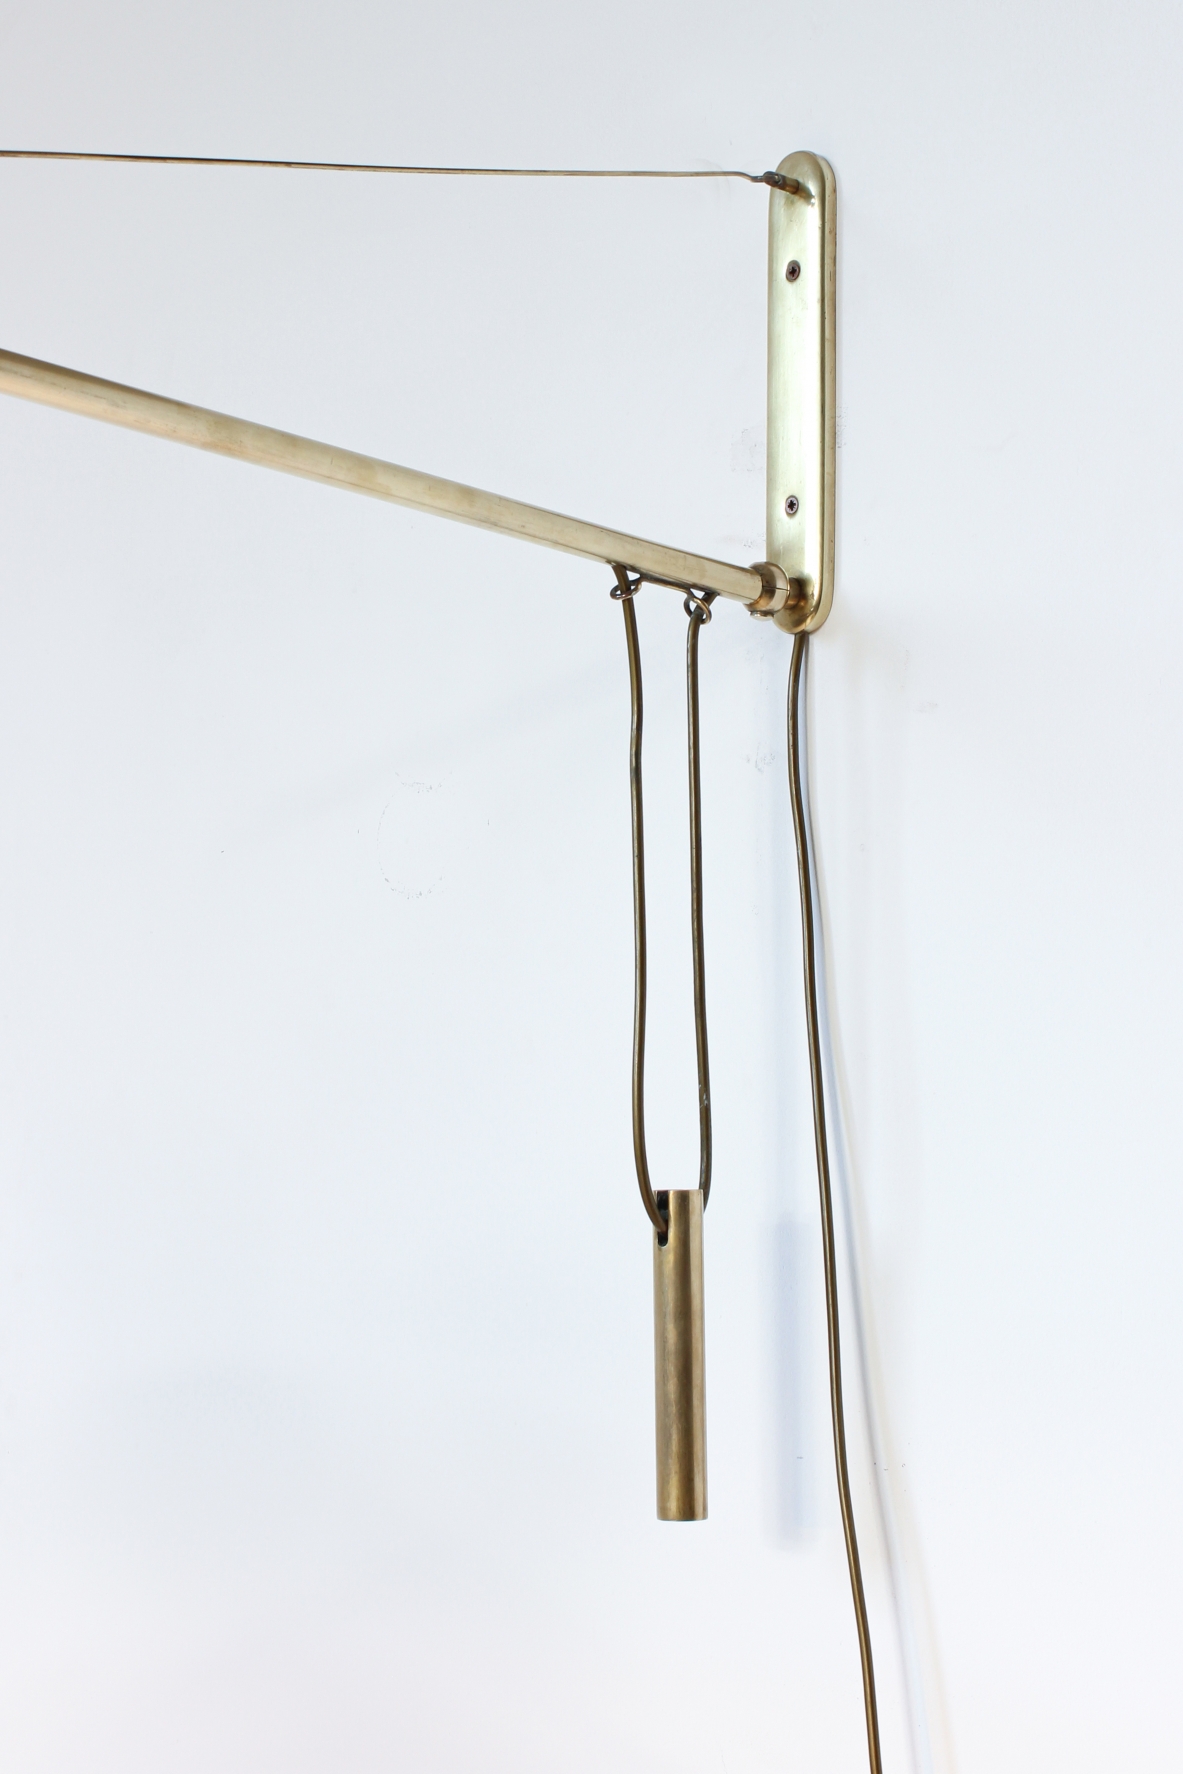 Lampada da parete saliscendi con contrappeso e braccio estensibile. Stilux Milano, 1950ca